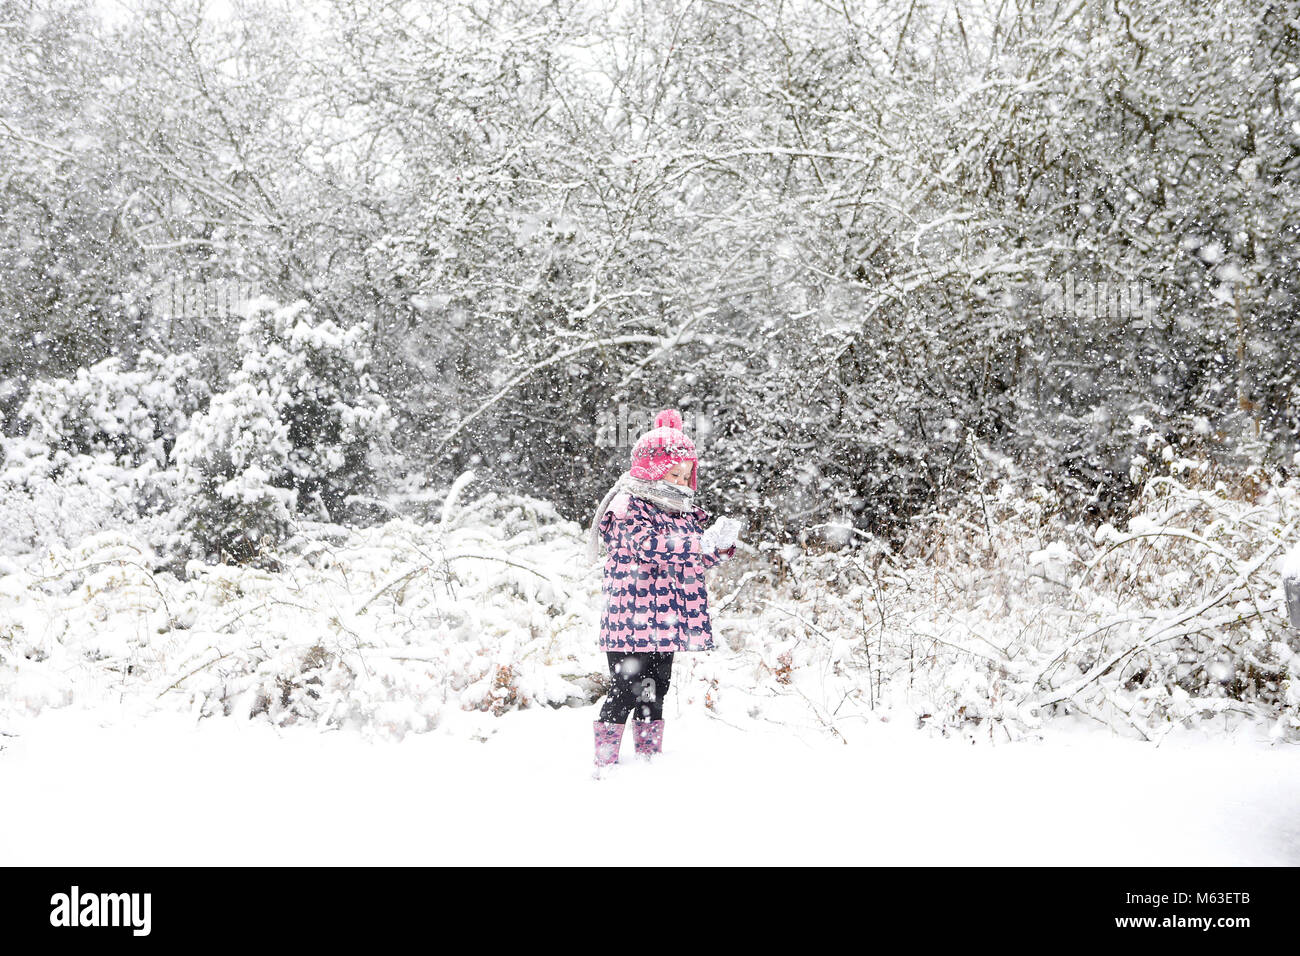 Cambridge, Reino Unido. 28 de febrero de 2018. Ivy Mitchell 2 1/2 años de edad juega en la nieve cerca de Cambridge, Reino Unido. Crédito: Jason Mitchell/Alamy Live News. Foto de stock